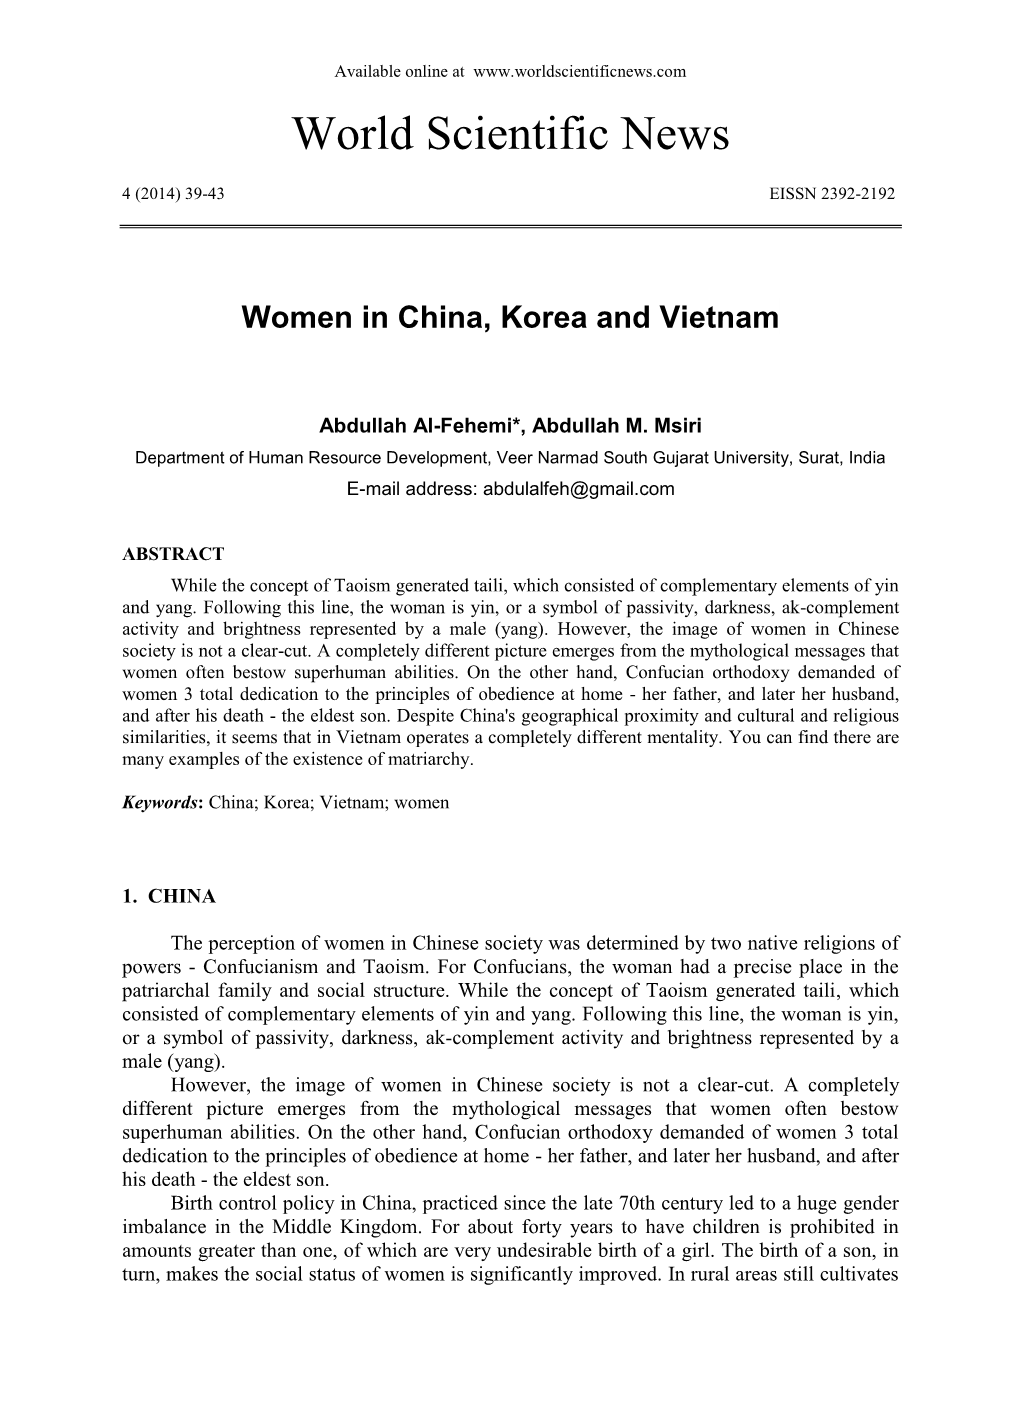 Women in China, Korea and Vietnam